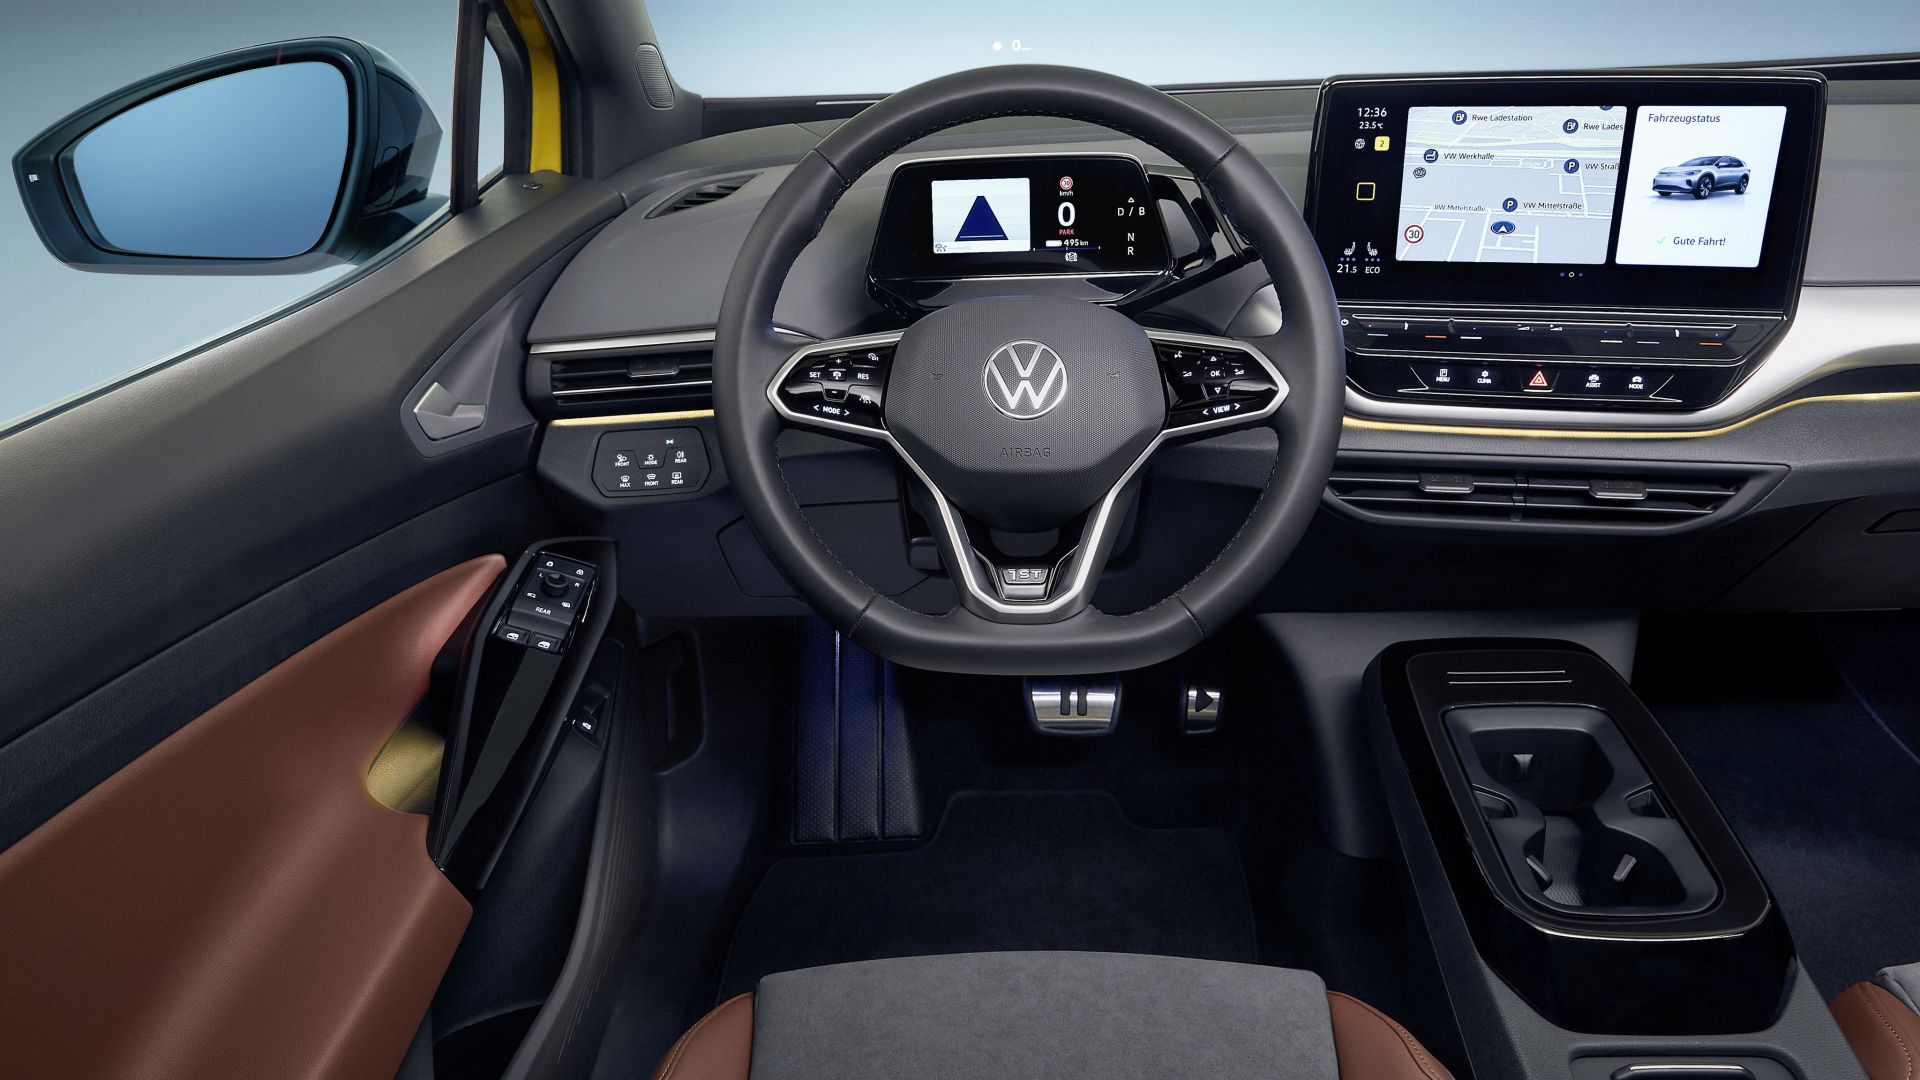 Nuova Volkswagen ID.4 (2021): dimensioni, interni, uscita, prezzo